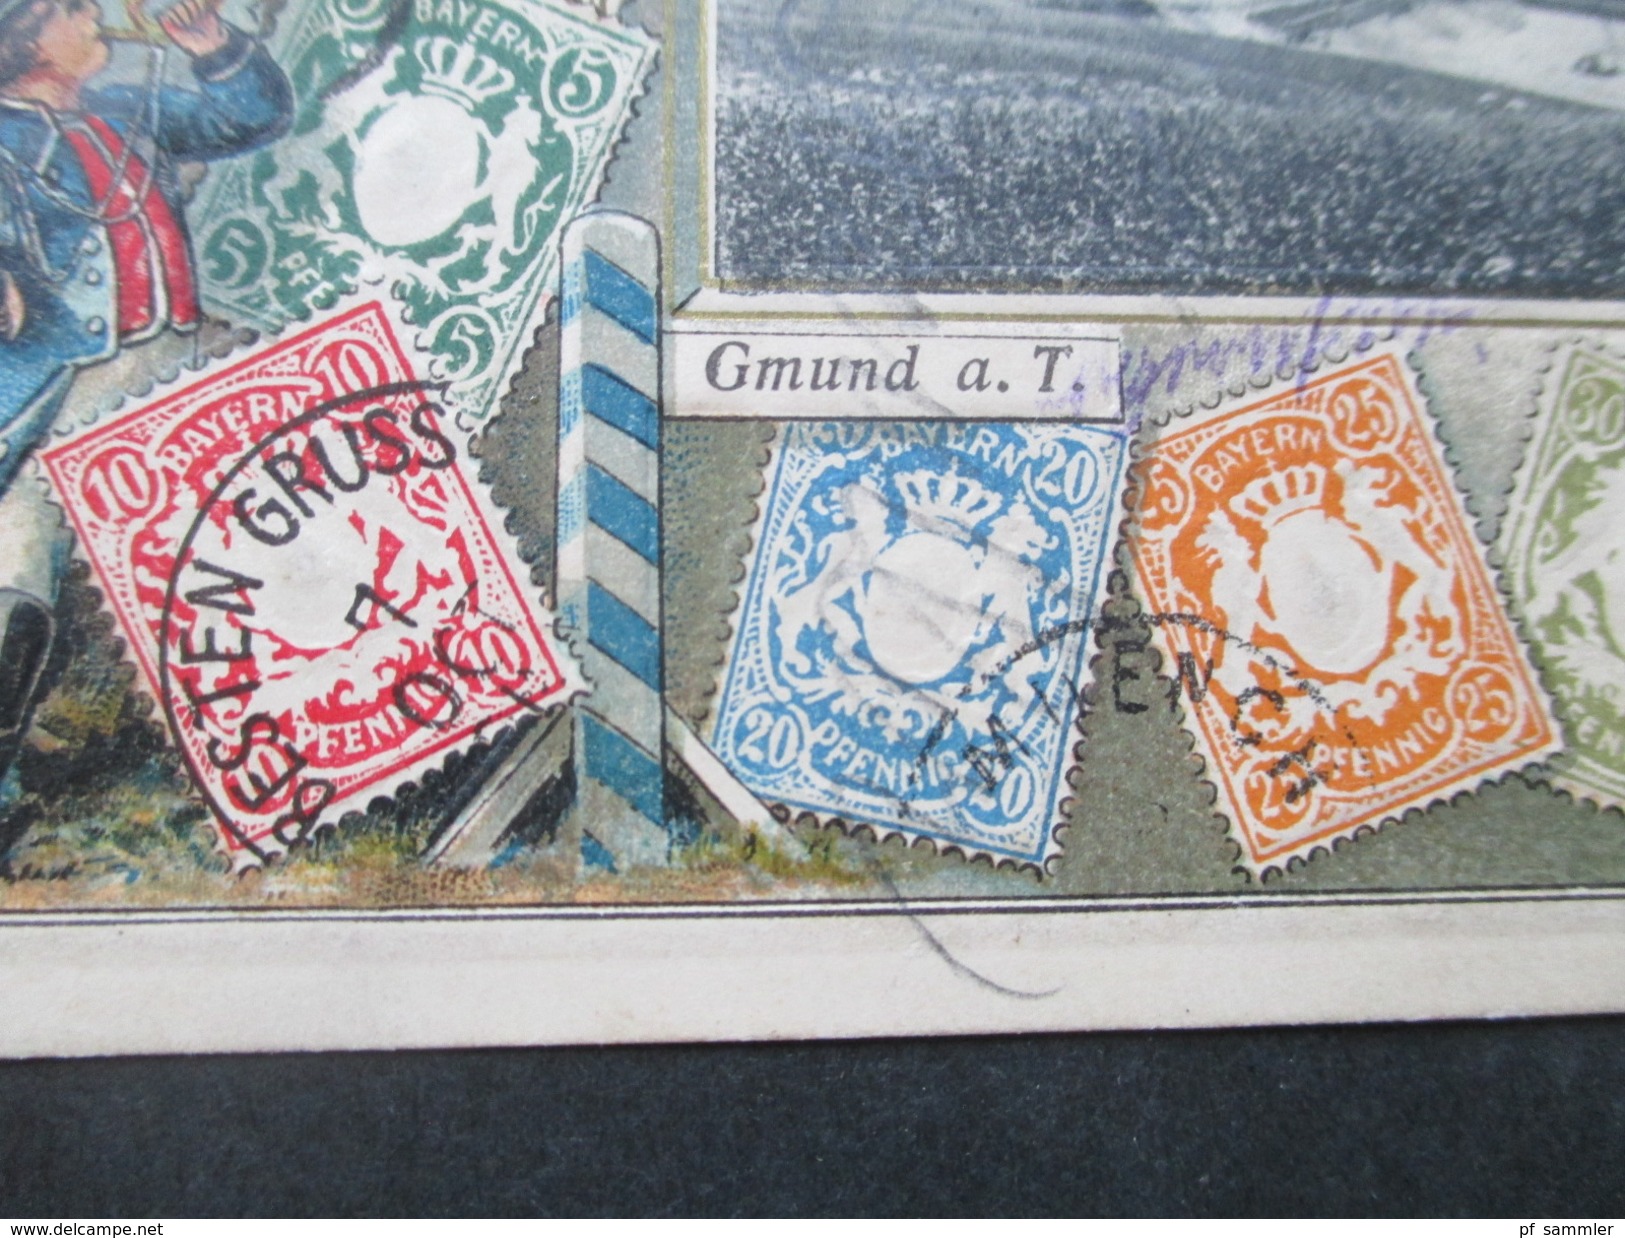 AK Altdeutschland Bayern Mehrbildkarte Briefmarken Bayern Und Gmund A.T. Philatelie Ansichtskarten Ottmar Zieher München - Francobolli (rappresentazioni)